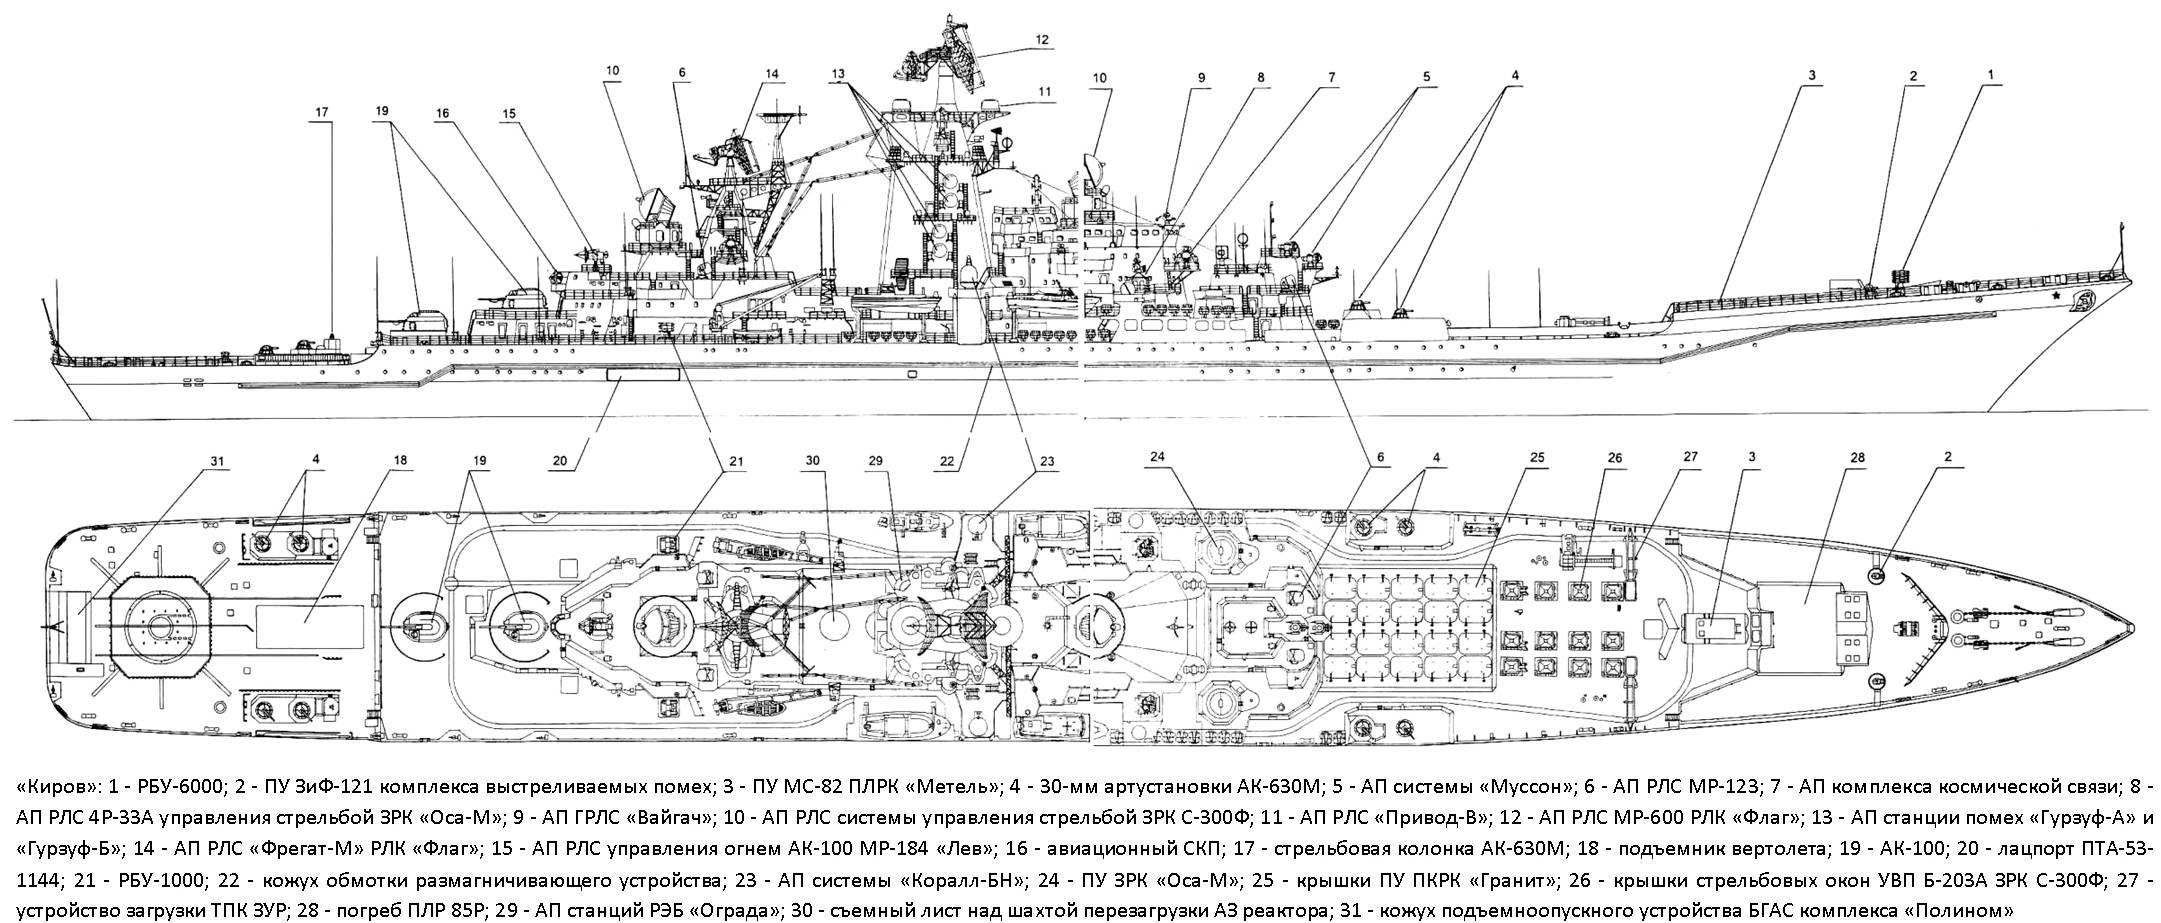 Атомный крейсер адмирал нахимов. крейсер адмирал нахимов характеристики описание фото